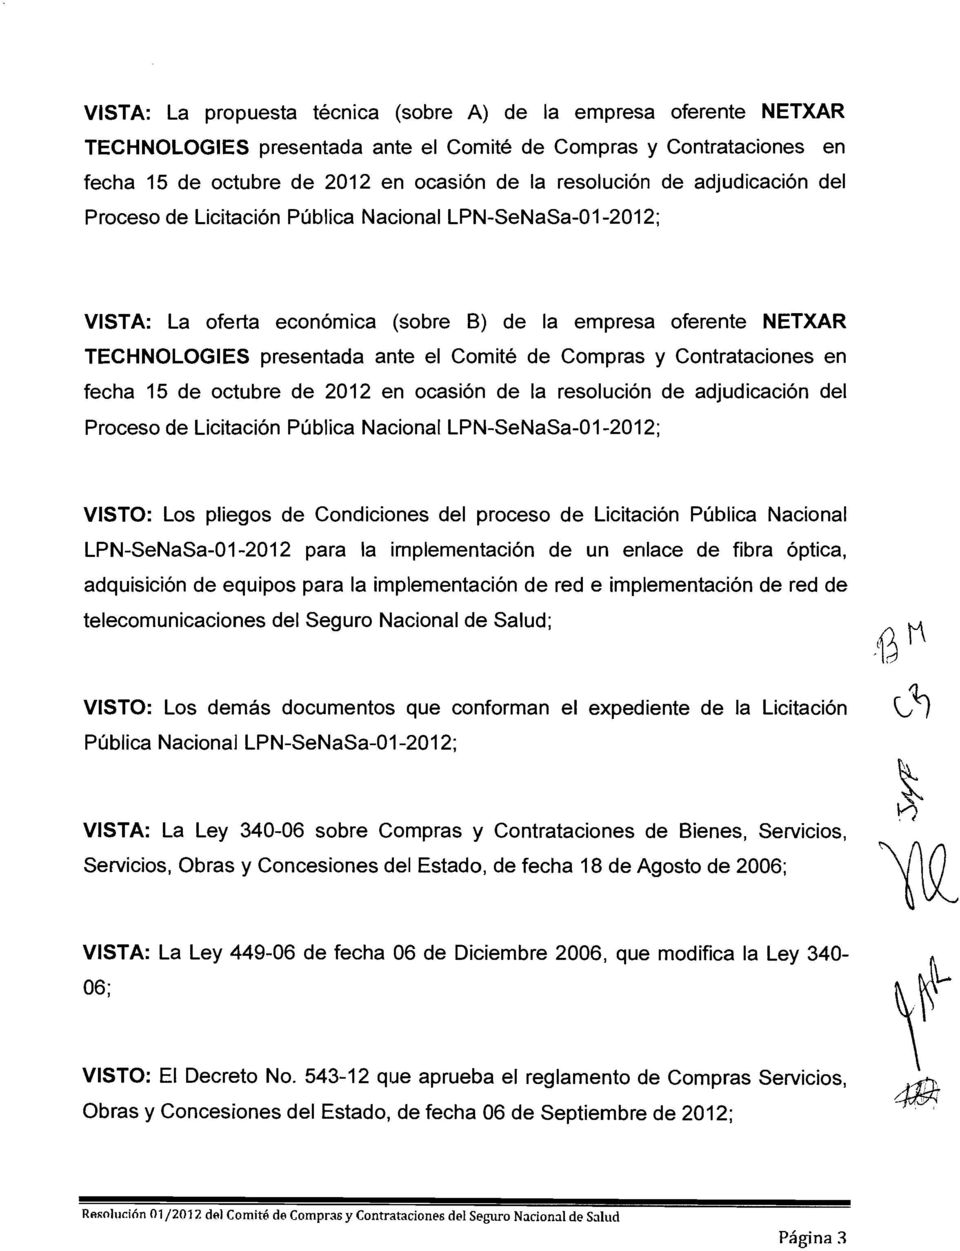 Contrataciones en fecha 15 de octubre de 2012 en ocasión de la resolución de adjudicación del Proceso de Licitación Pública Nacional LPN-SeNaSa-01-2012; VISTO: Los pliegos de Condiciones del proceso